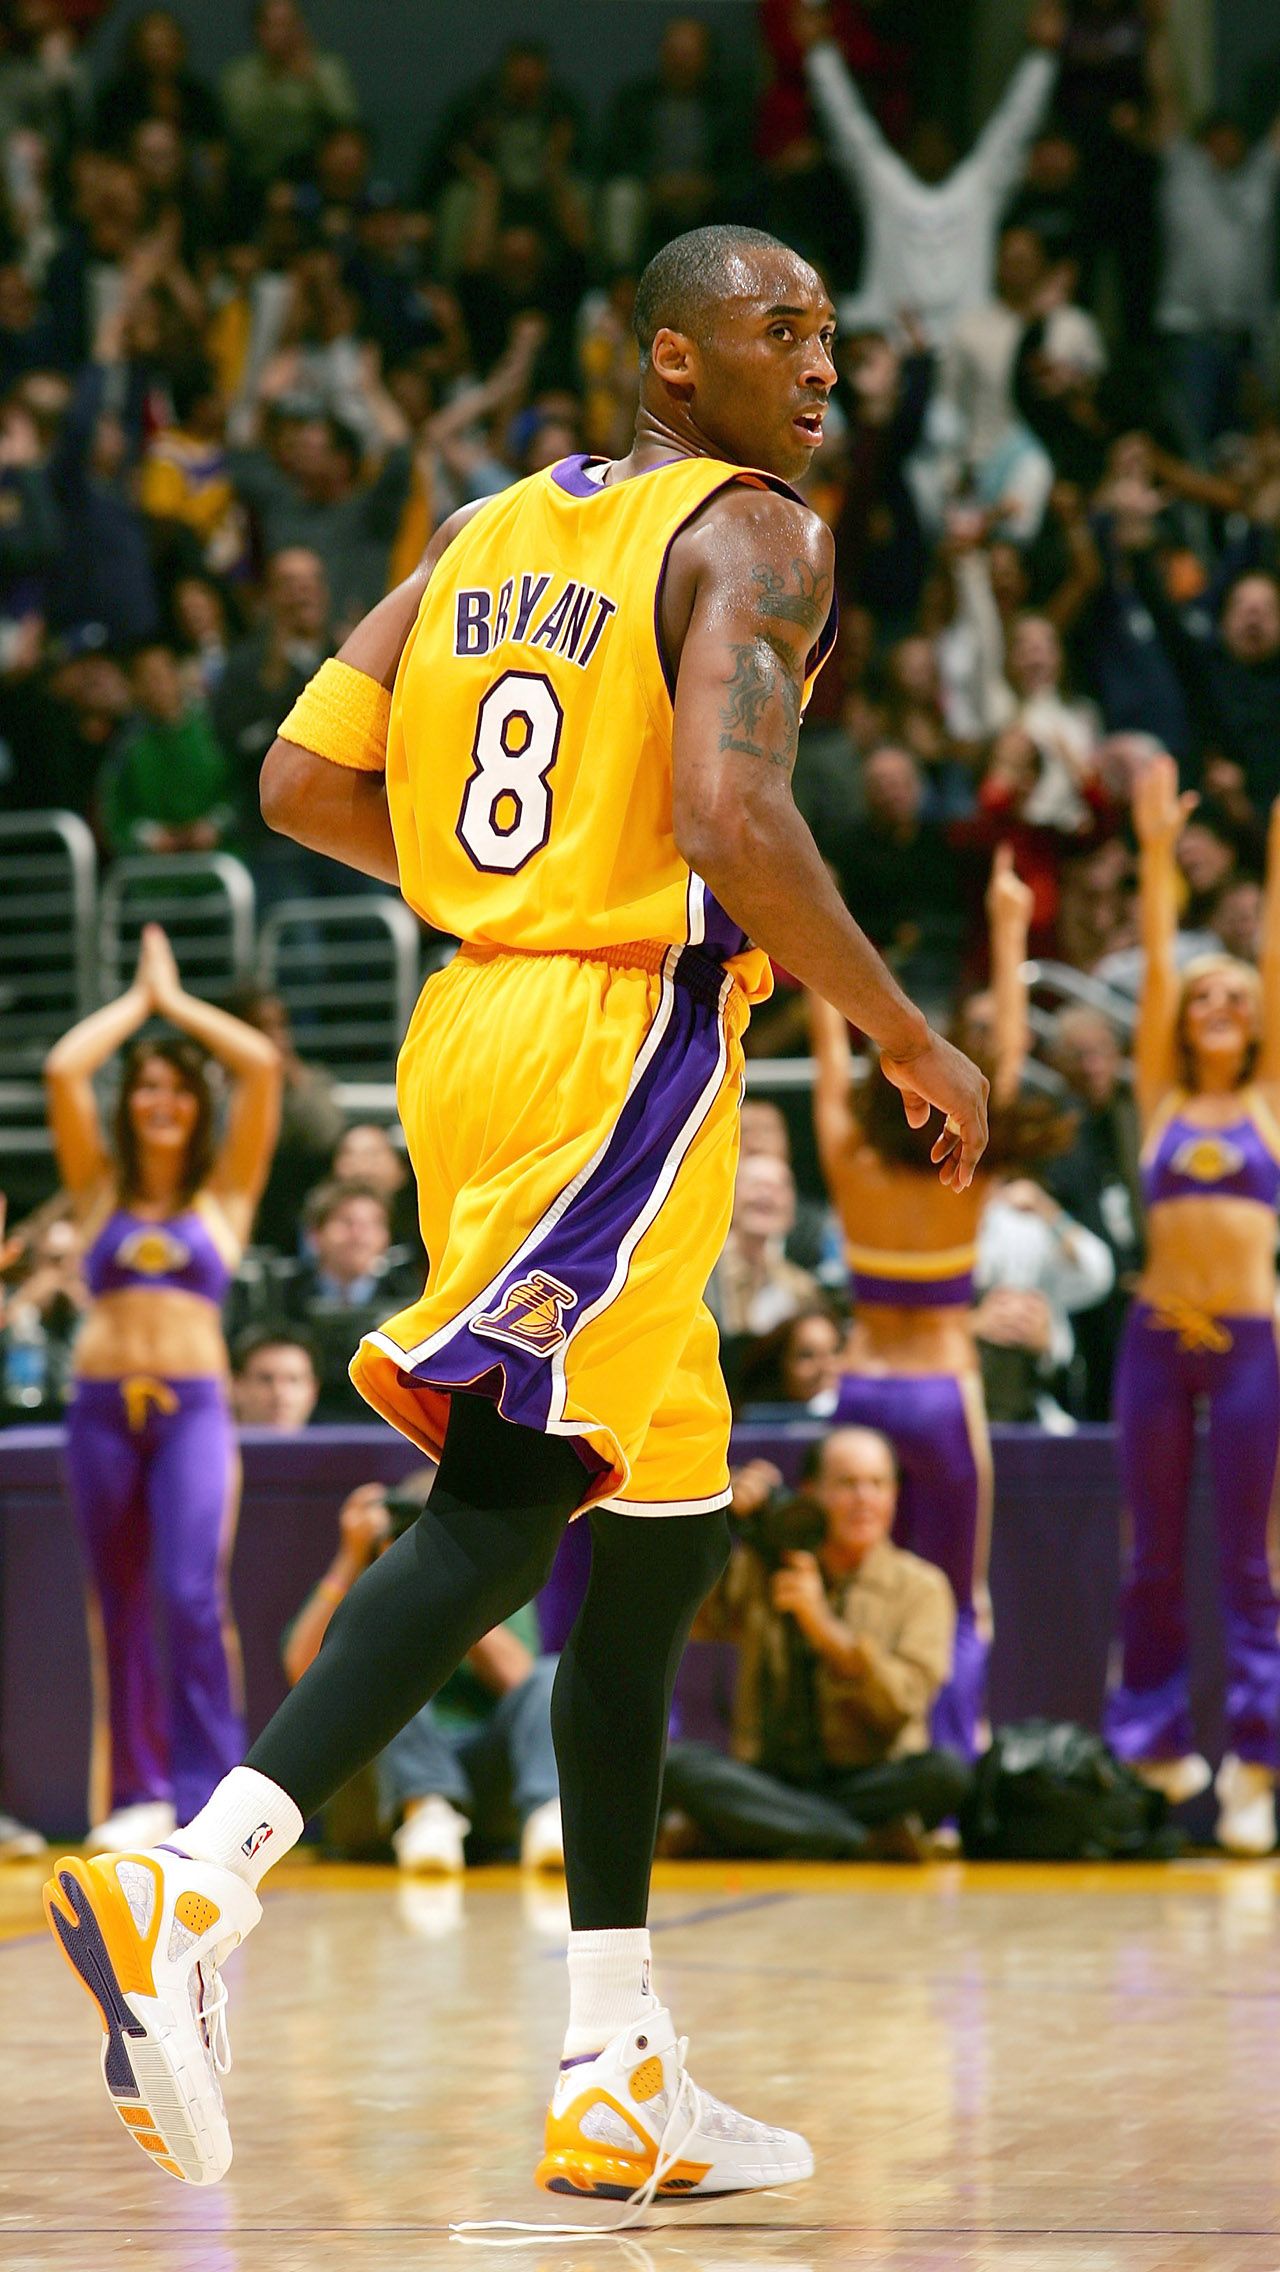 Свою первую игру с 60 очками в НБА Коби провёл спустя почти два десятилетия, в возрасте 27 лет. 20 декабря 2005 года он набрал 62 очка всего за три четверти в матче с «Даллас Маверикс».